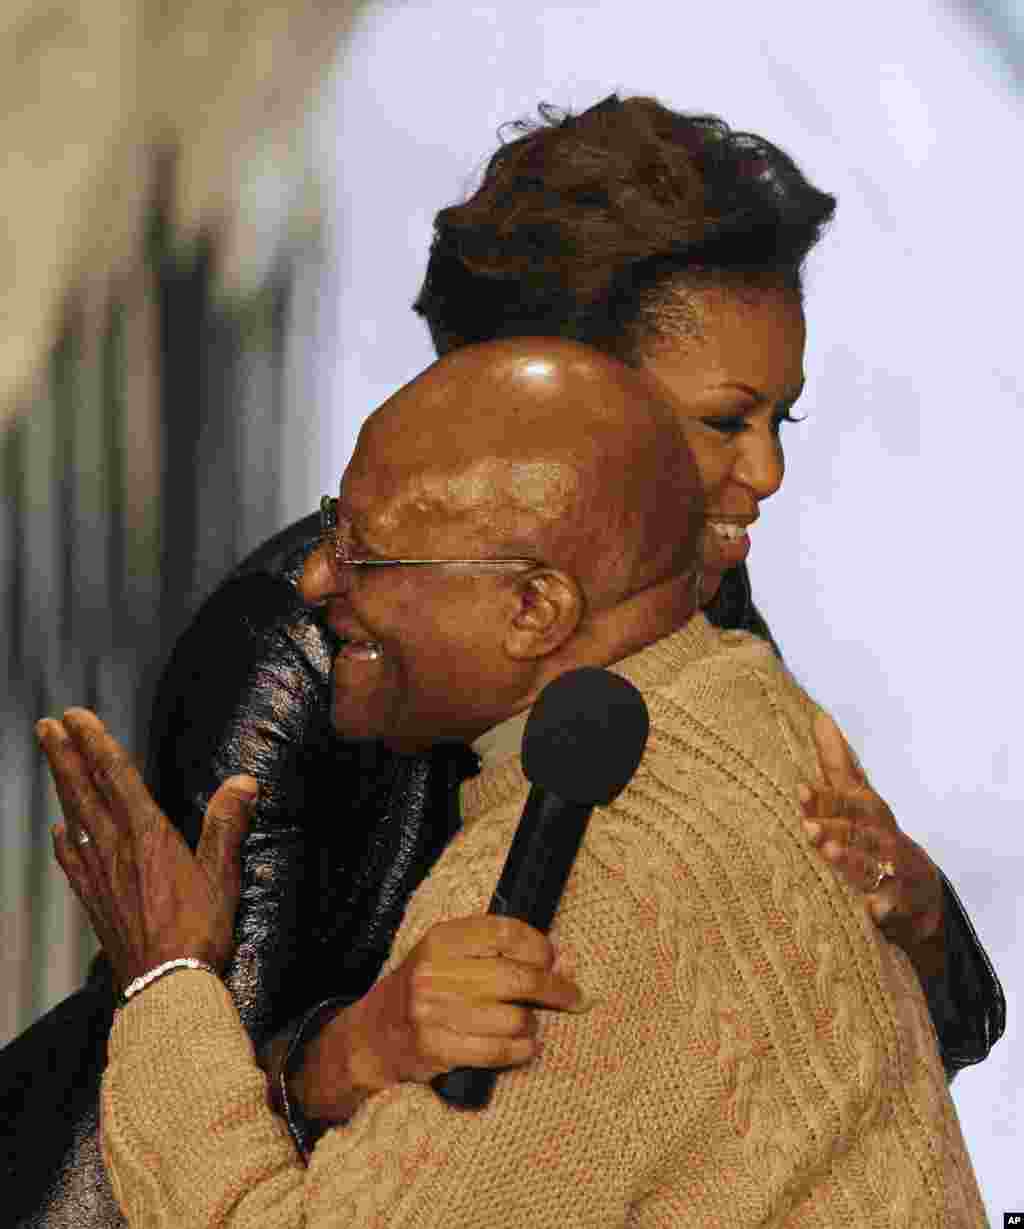 Michelle Obama com o arcebispo anglicano Desmond Tutu, na Cidade do Cabo. Tutu foi galardoado com Prémio Nobel da Paz em 1984 e é um dos heróis da luta contra o apartheid.